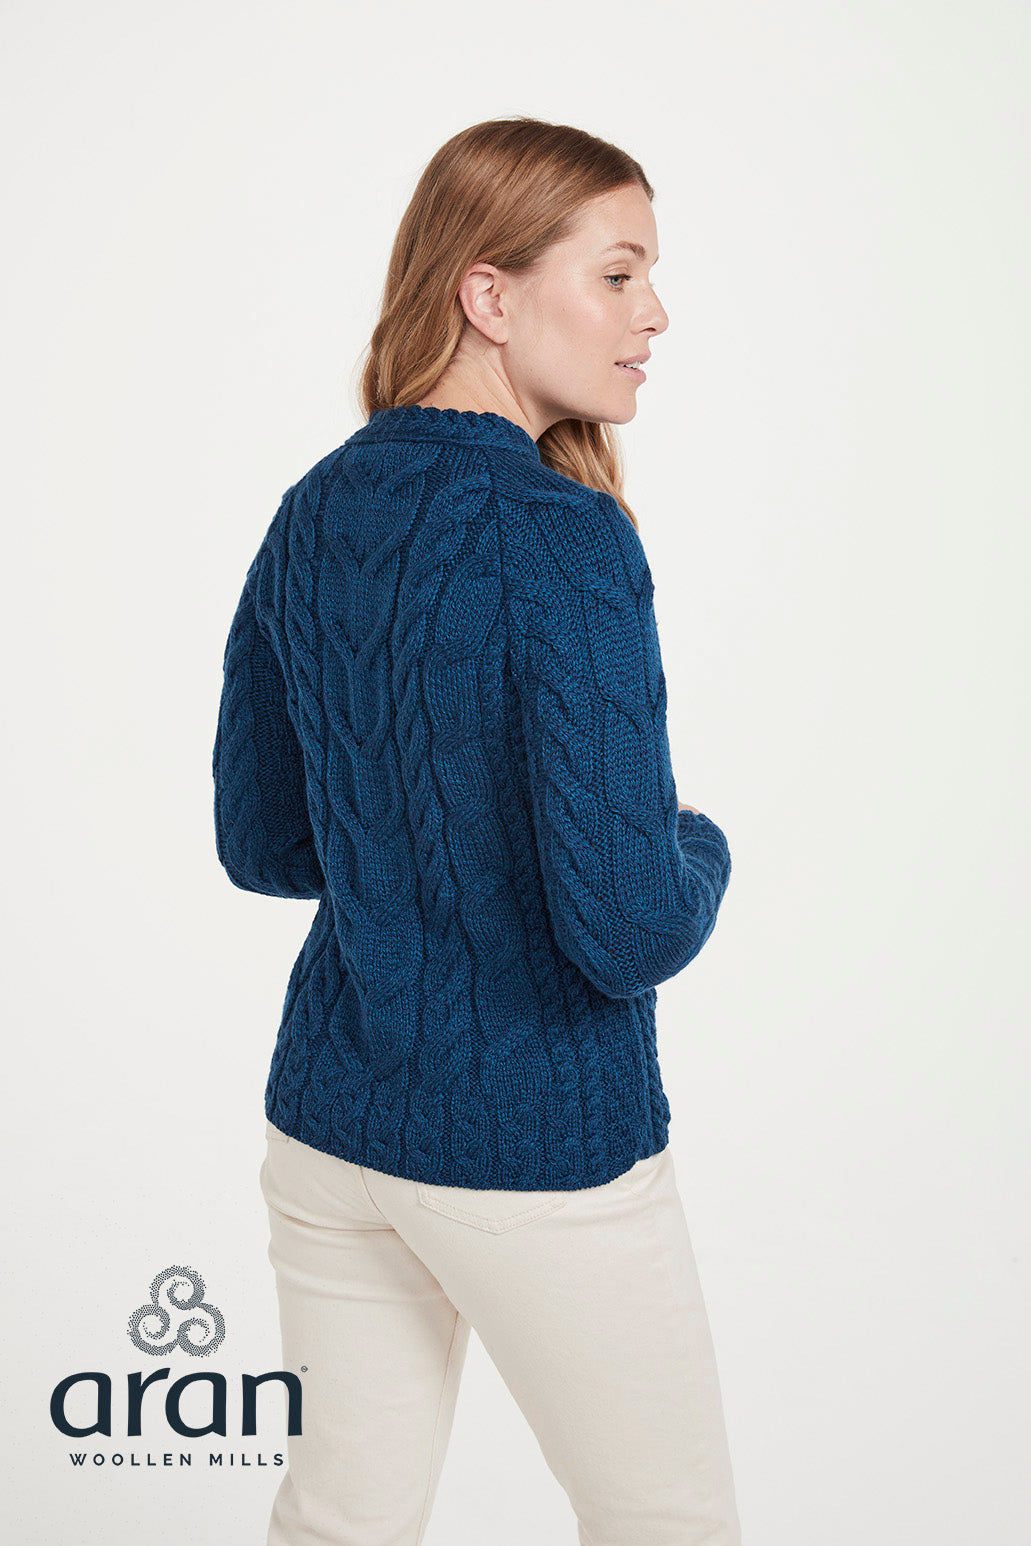 Aran Woollen Mills - B951 | Wollpullover für Damen